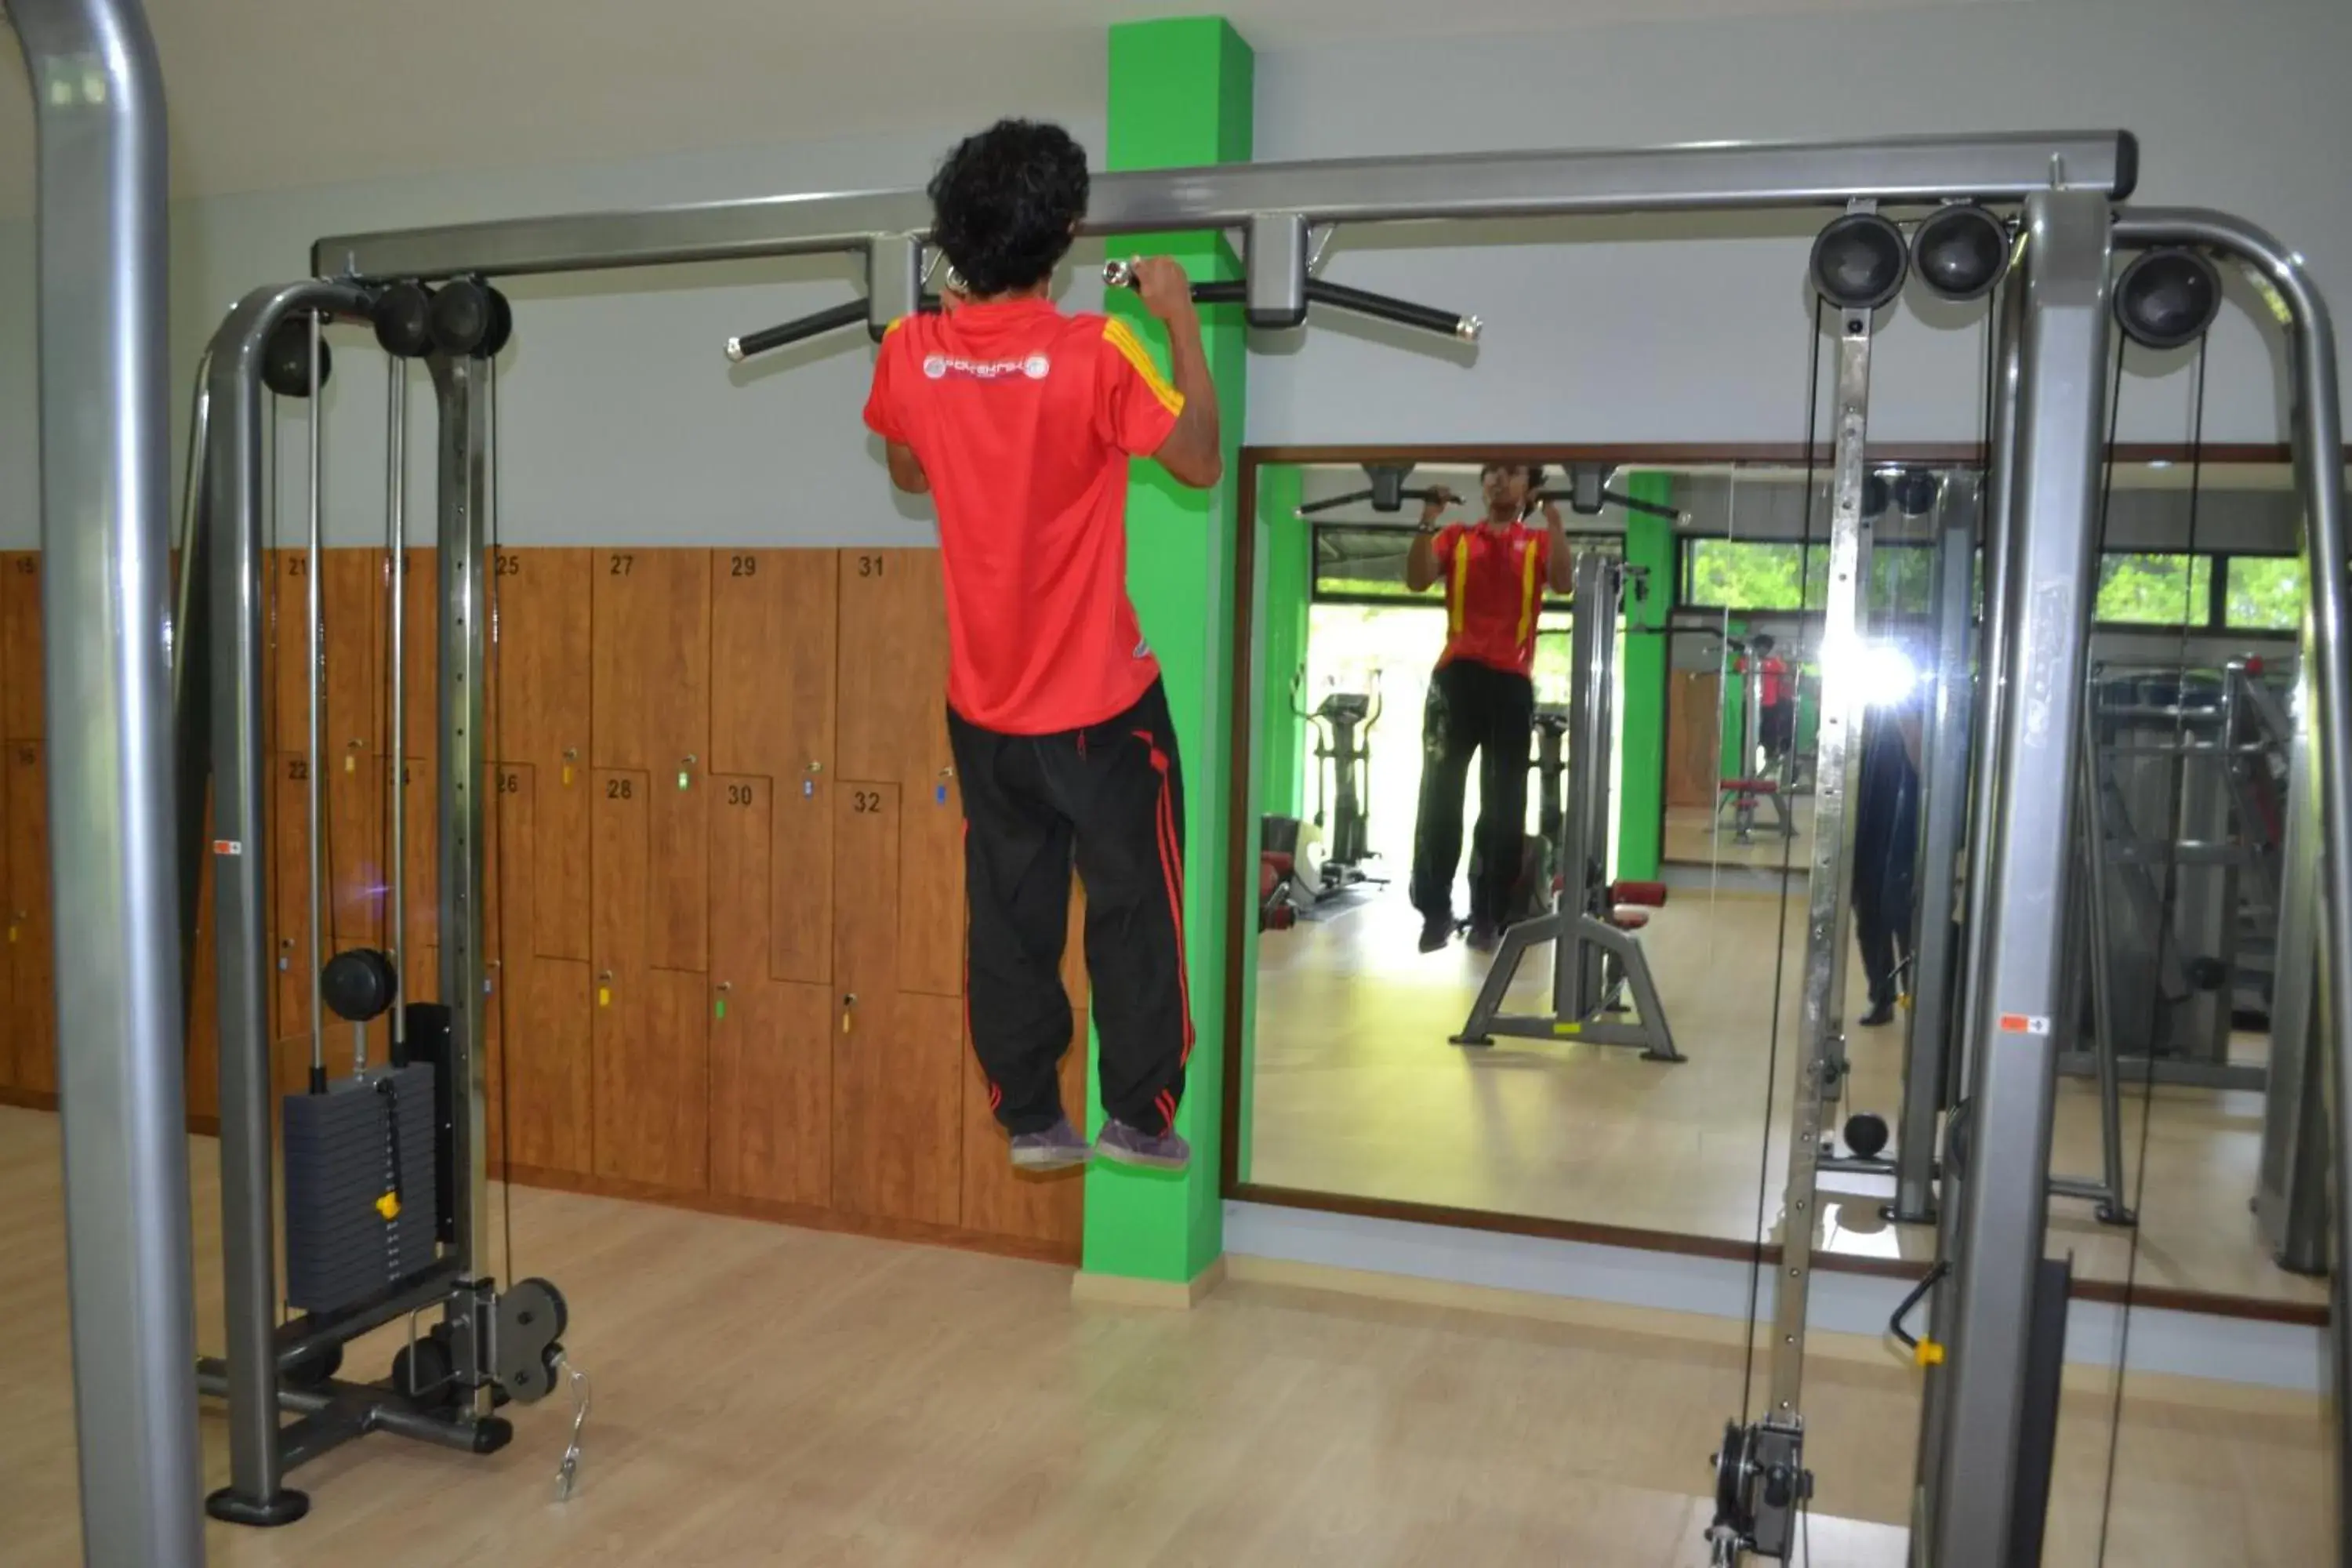 Fitness centre/facilities, Fitness Center/Facilities in De Rhu Beach Resort